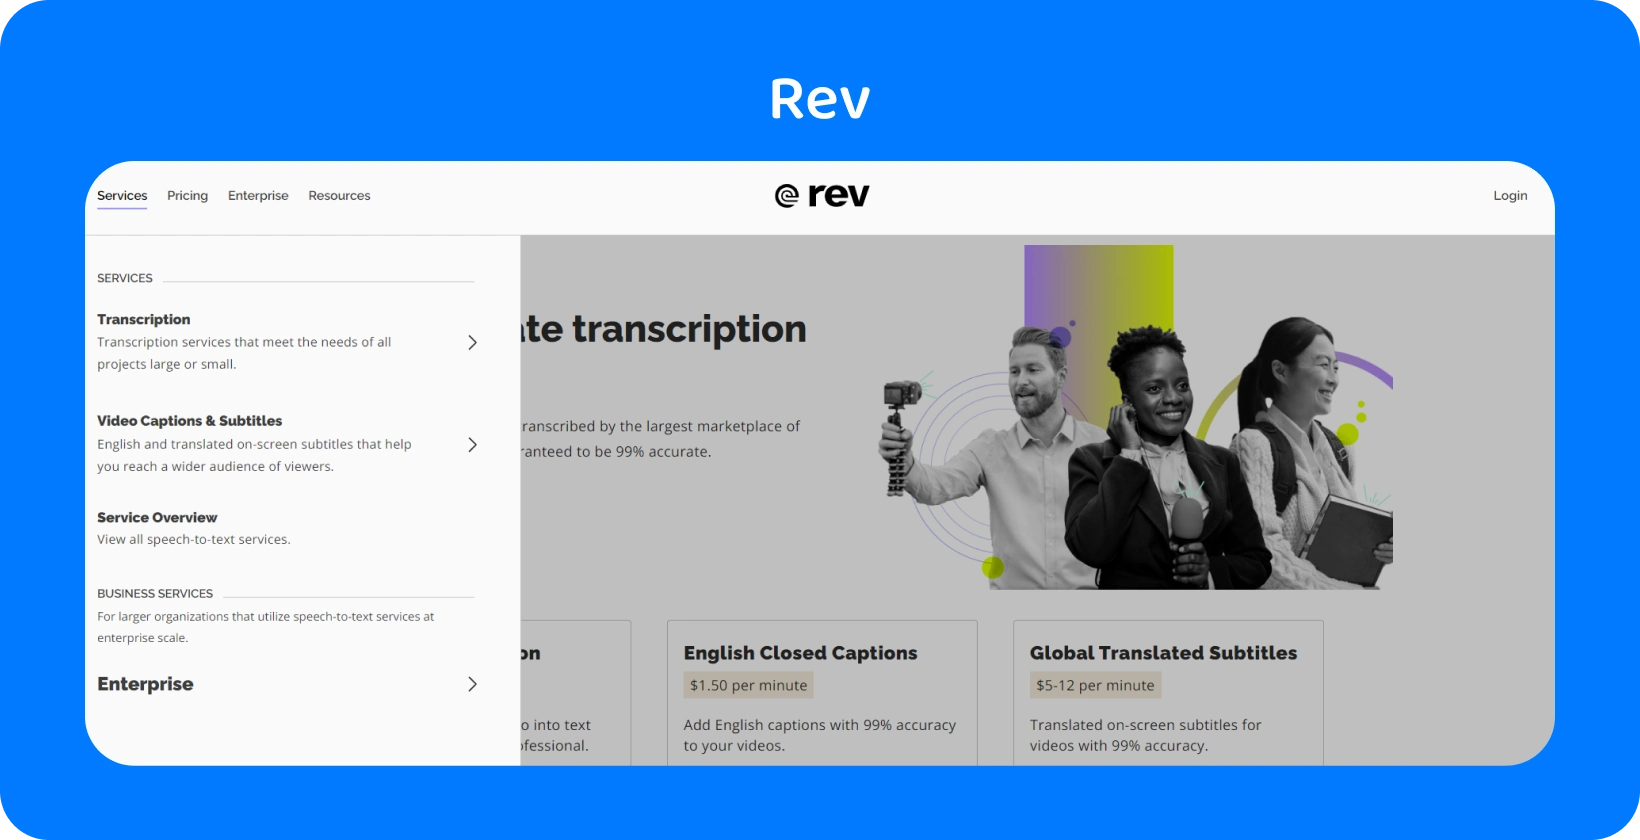 Beranda Rev menampilkan layanan transkripsi untuk konversi audio ke teks yang cepat dan akurat bagi para profesional.